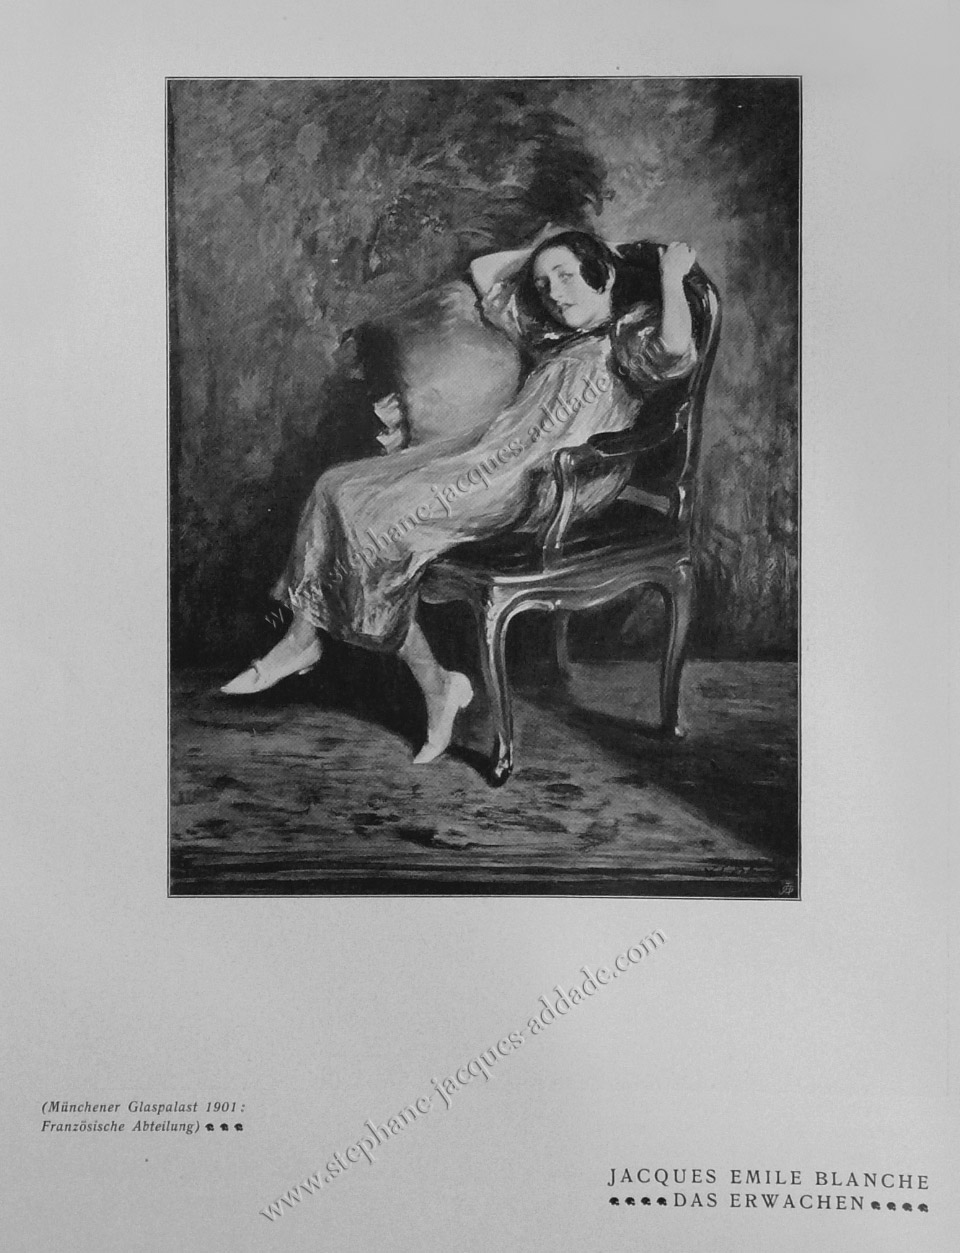  Jacques-Emile Blanche - Das Erwachen (Just awake) in Die Kunst für Alle (Art for All) 1901